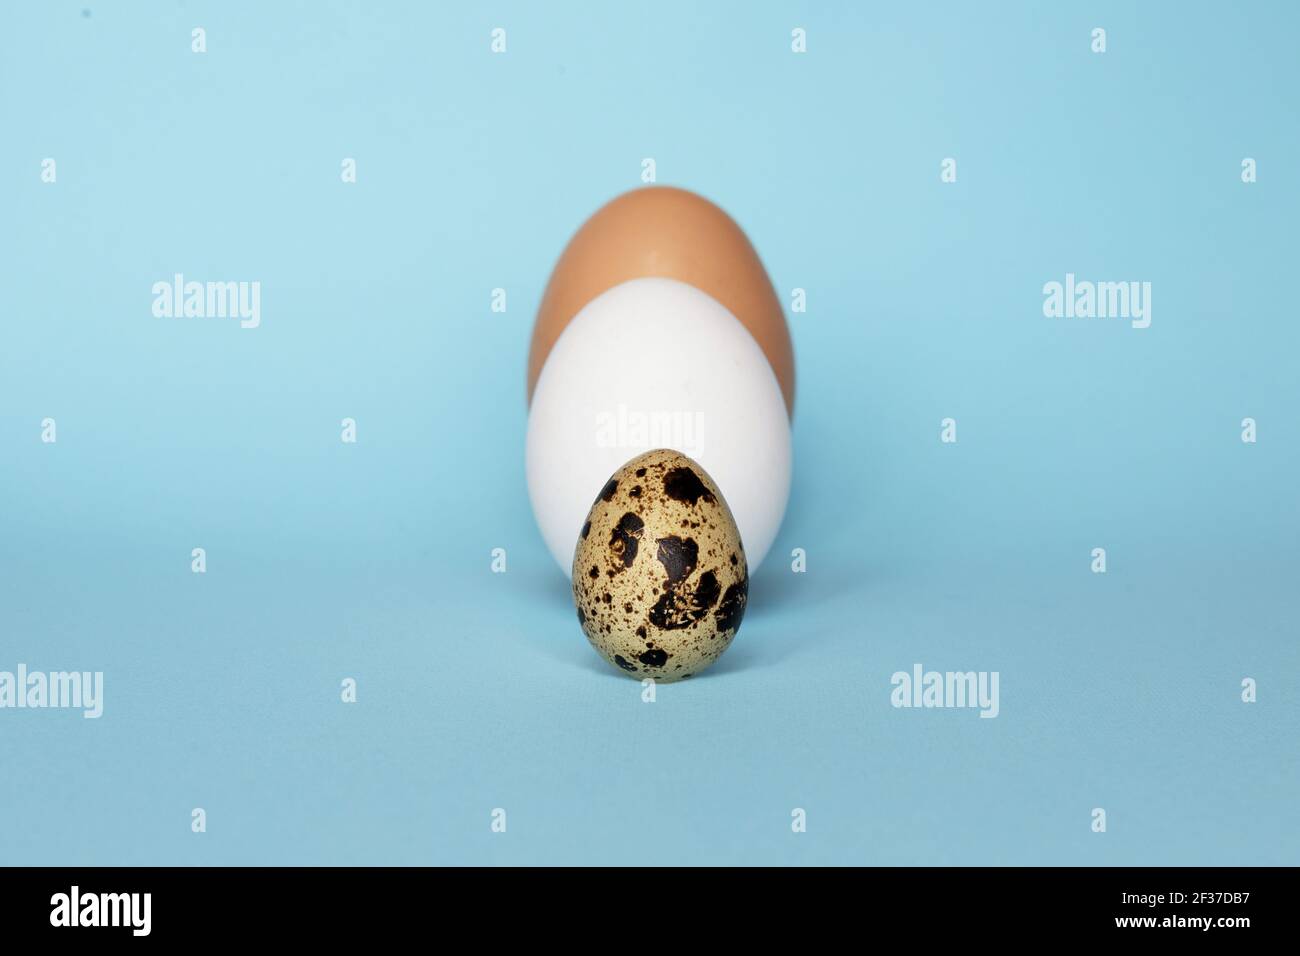 Drei Arten von verschiedenen Vögeln Eier isoliert auf blauem Papier  Hintergrund. Verschiedene Größe und Art Choice Konzept. Wachtel, Eier und  puteneier Nährstoffe Stockfotografie - Alamy